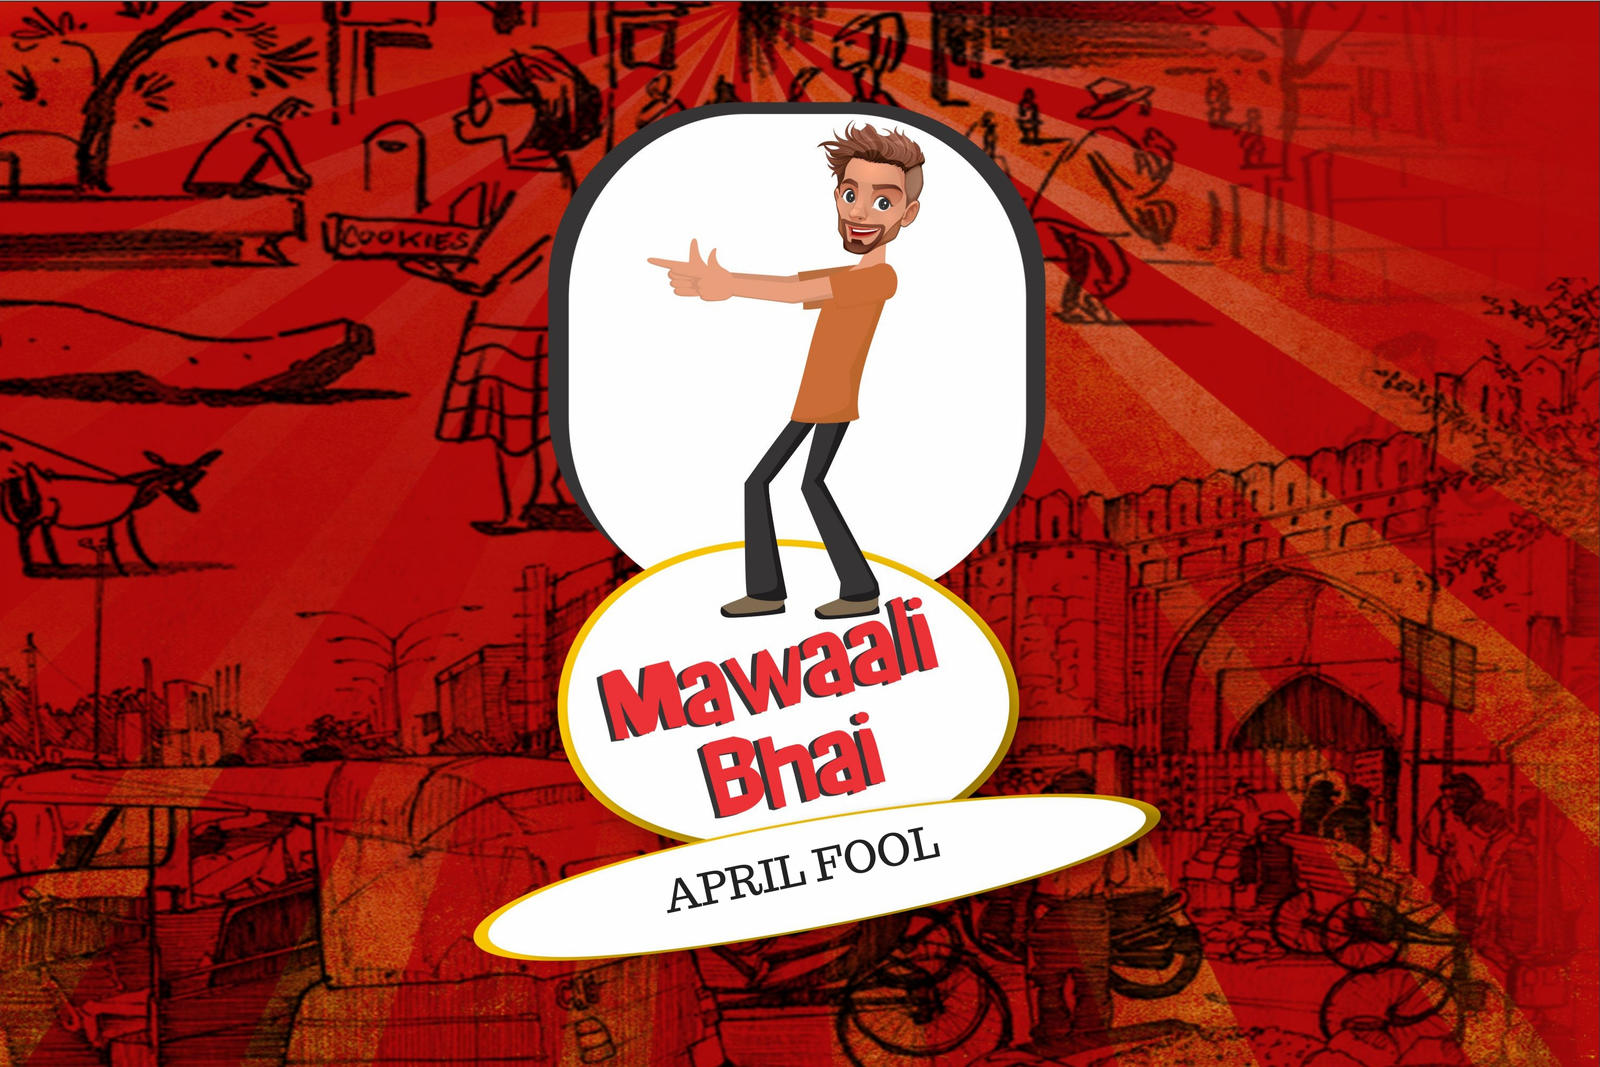 Mawaali Bhai - April Fool